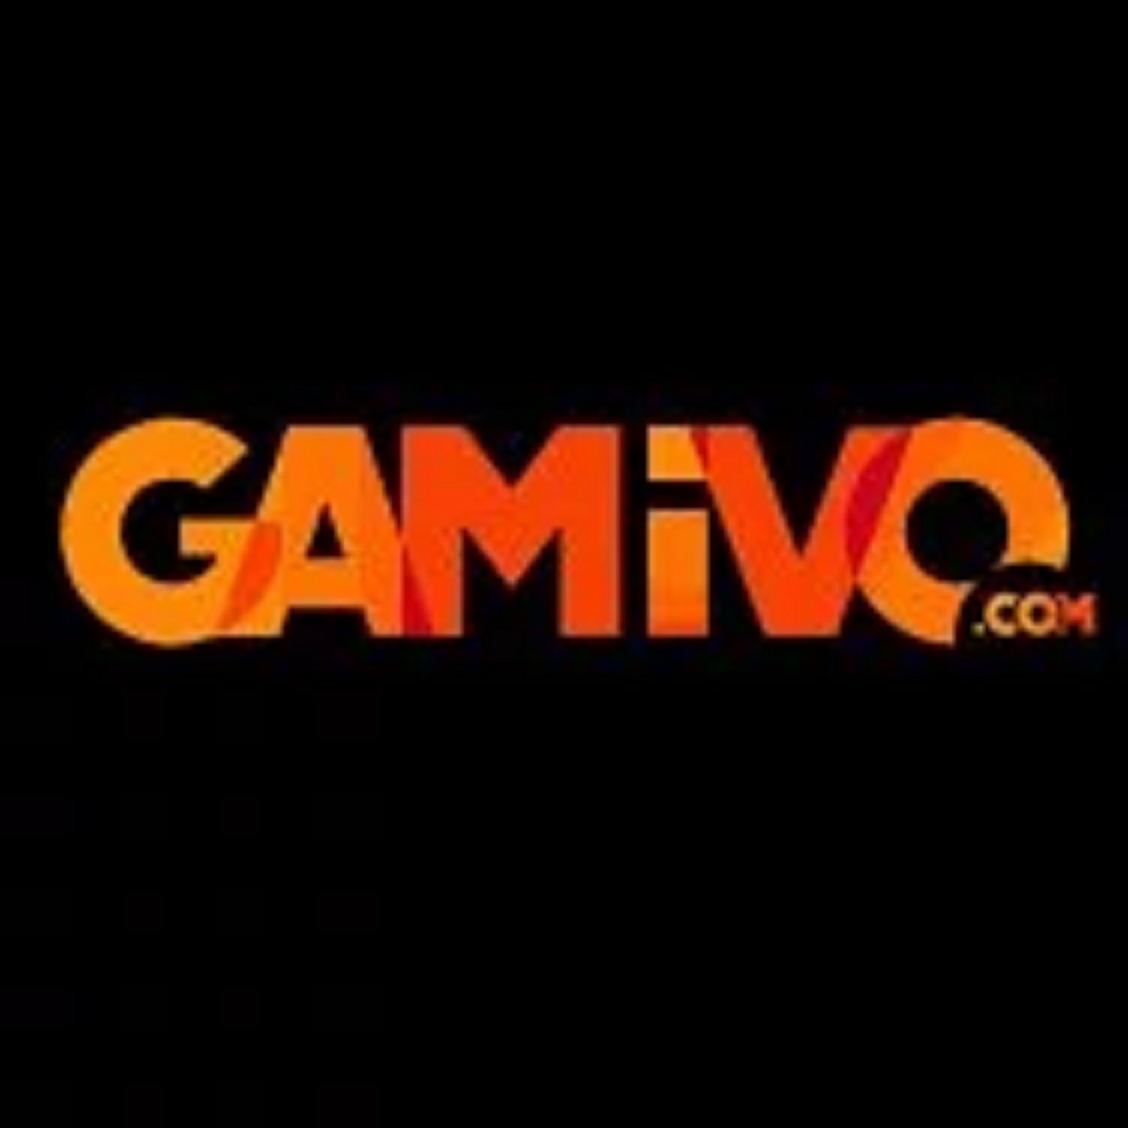 Juegos por 10 céntimos en Gamivo